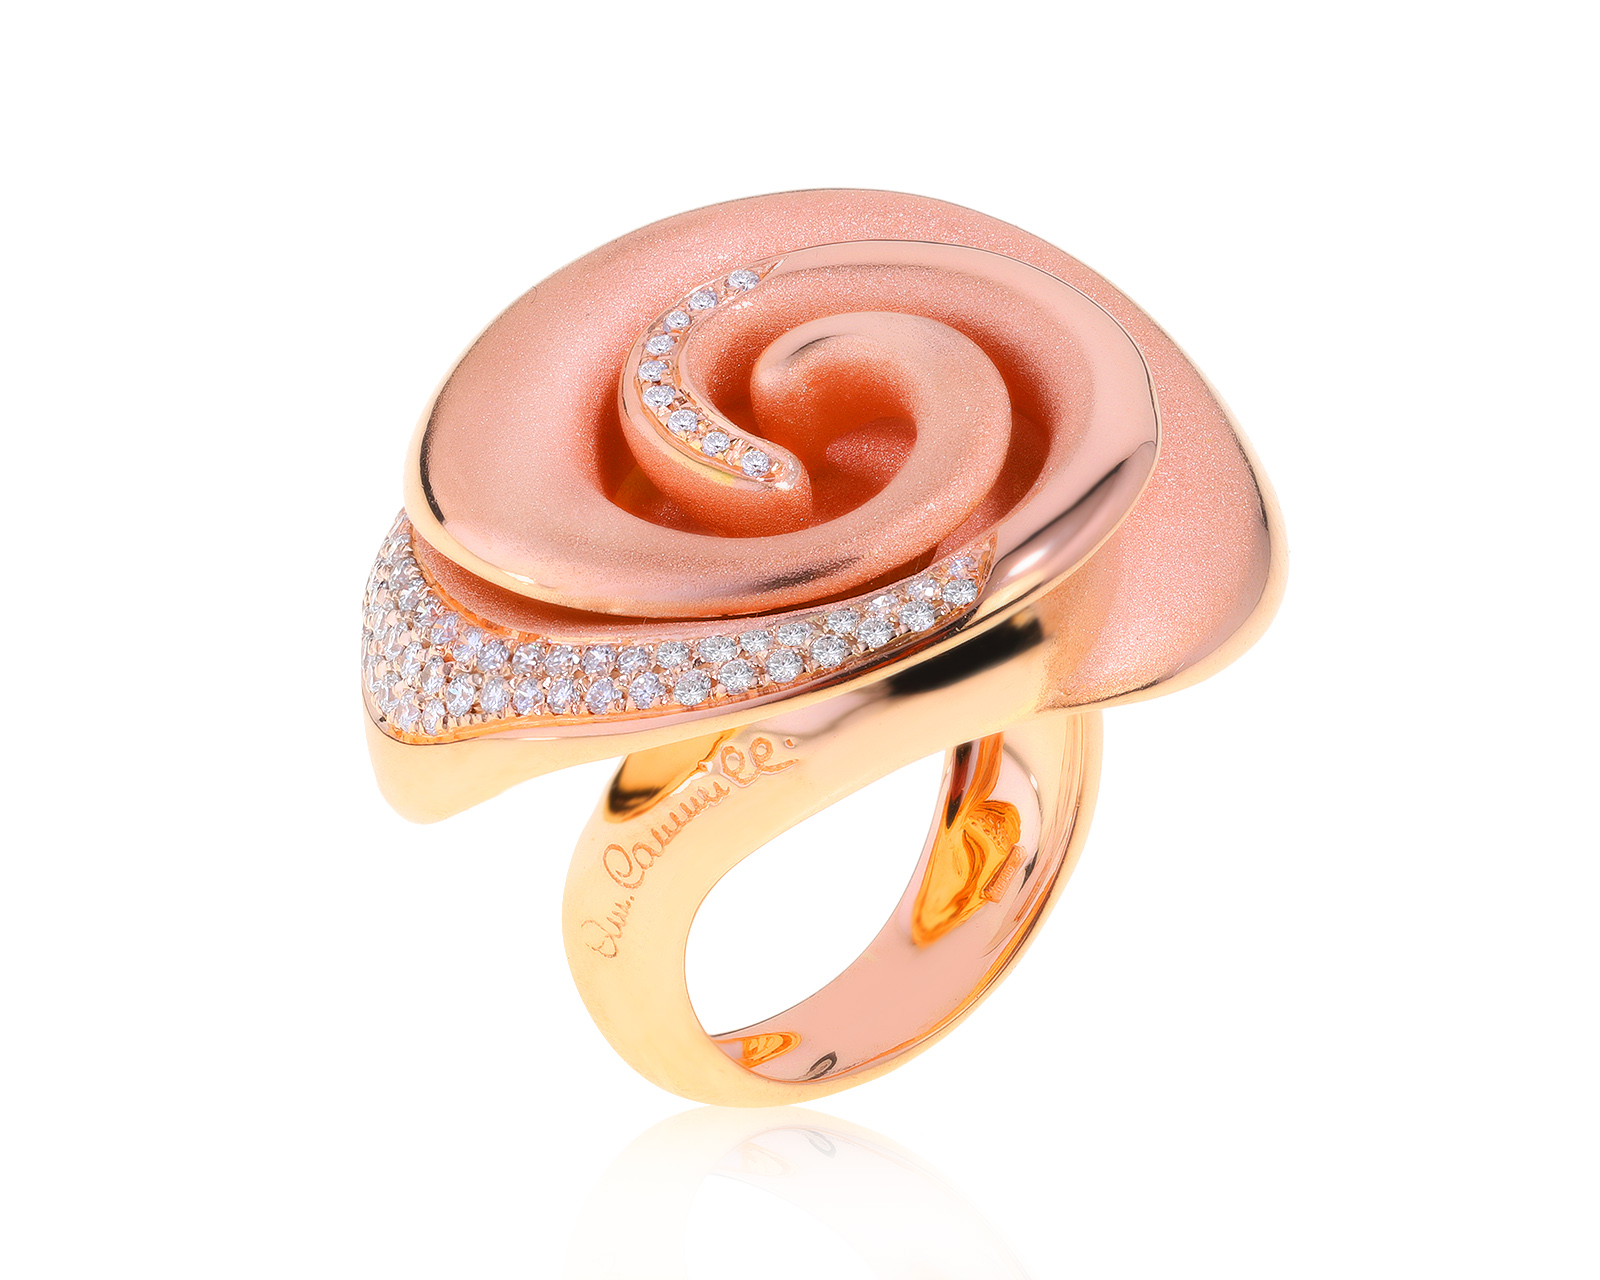 Оригинальное золотое кольцо с бриллиантами Annamaria Cammilli